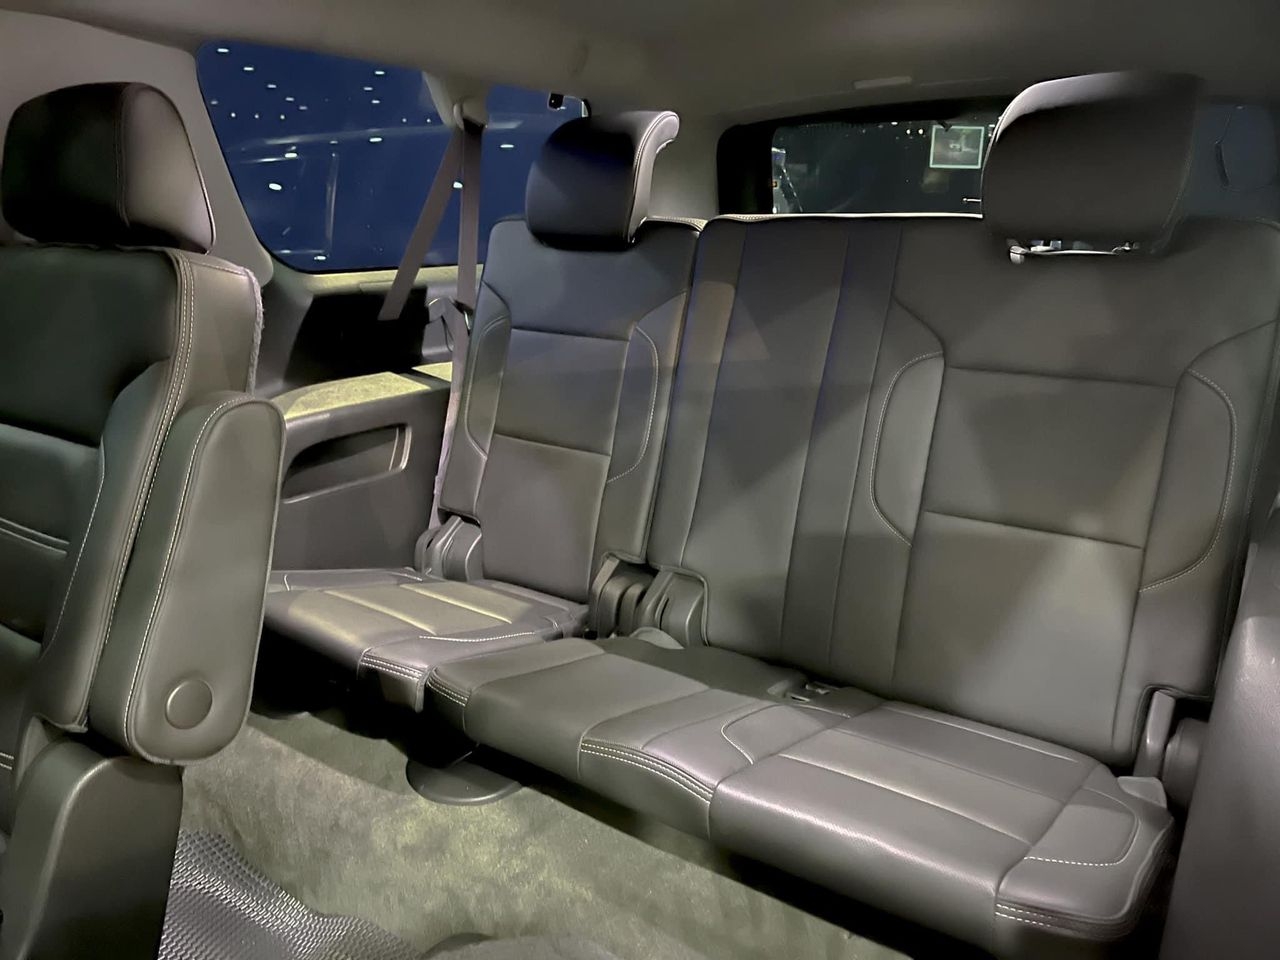 'Khủng Long' GMC Yunkon Denali XL 2015 lên sàn xe cũ với giá chỉ 3,6 tỷ đồng